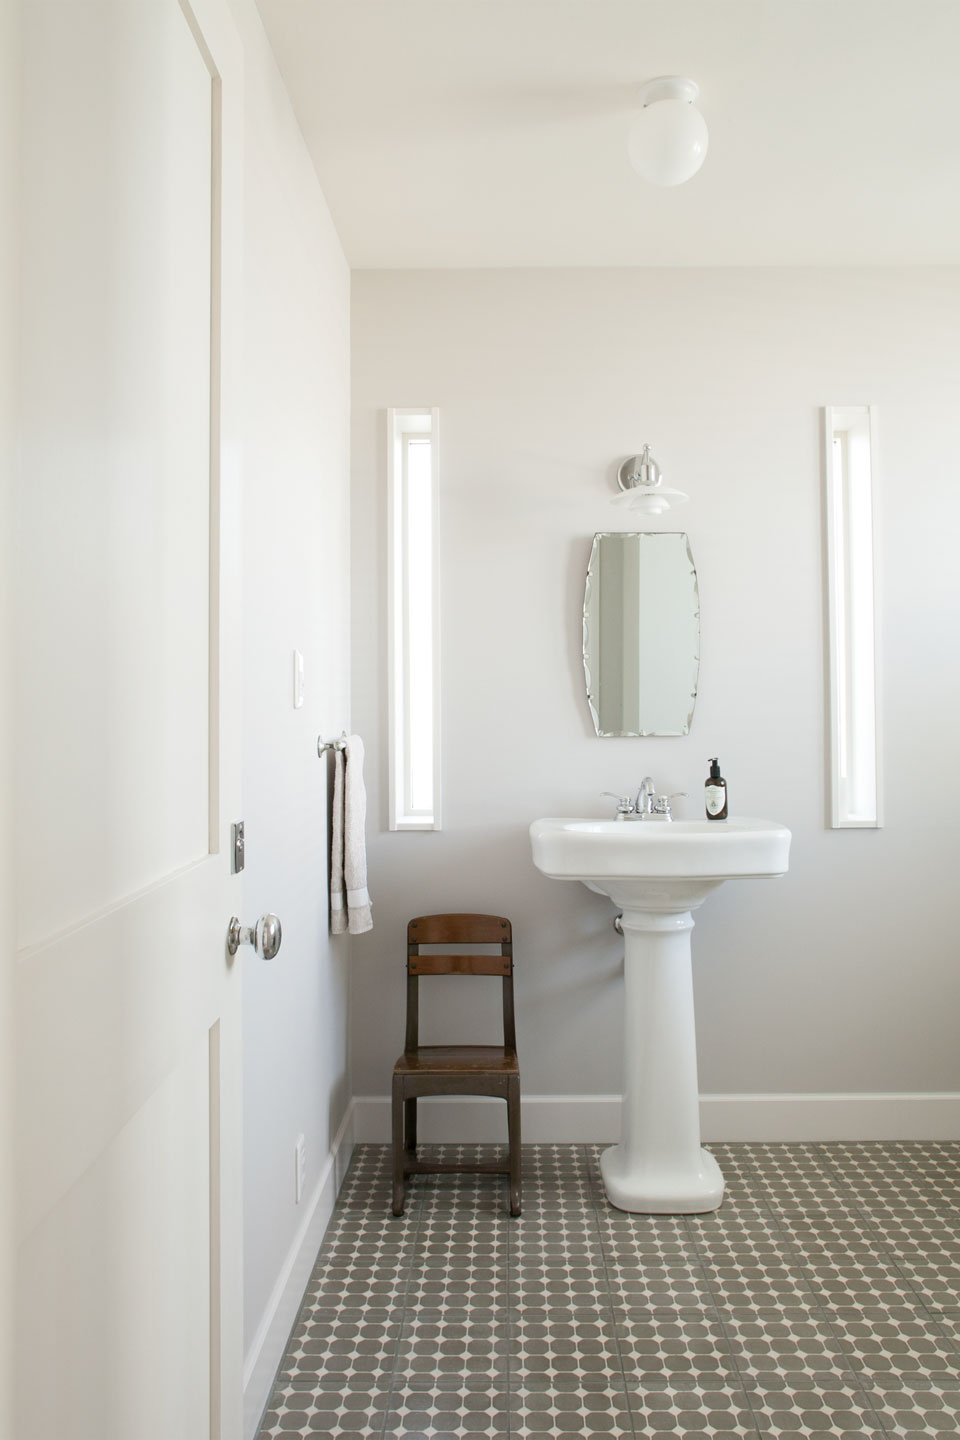 ポルトガルから輸入したタイルを敷いたトイレ。ホワイトペイントとの調和で柔らかい雰囲気に包まれている。